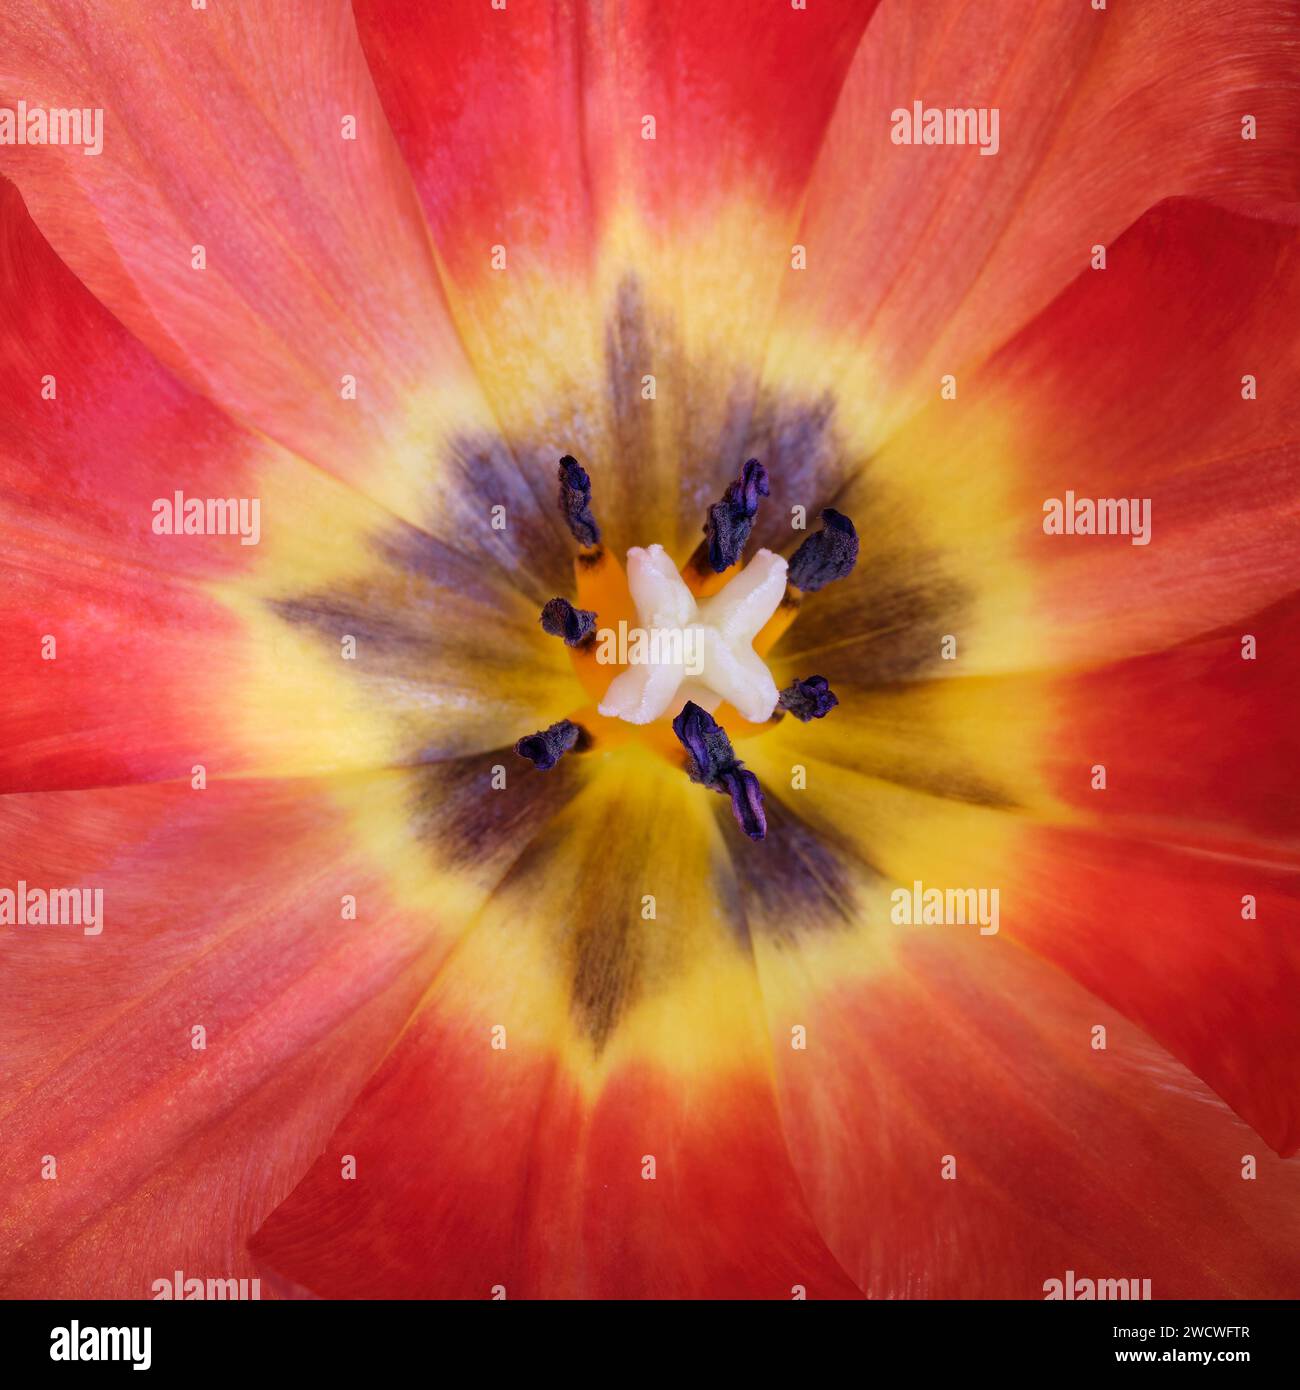 Une vue rapprochée de l'intérieur d'une tulipe montrant la pistale et l'étamine entourées d'un éclat de pétales colorés. Banque D'Images